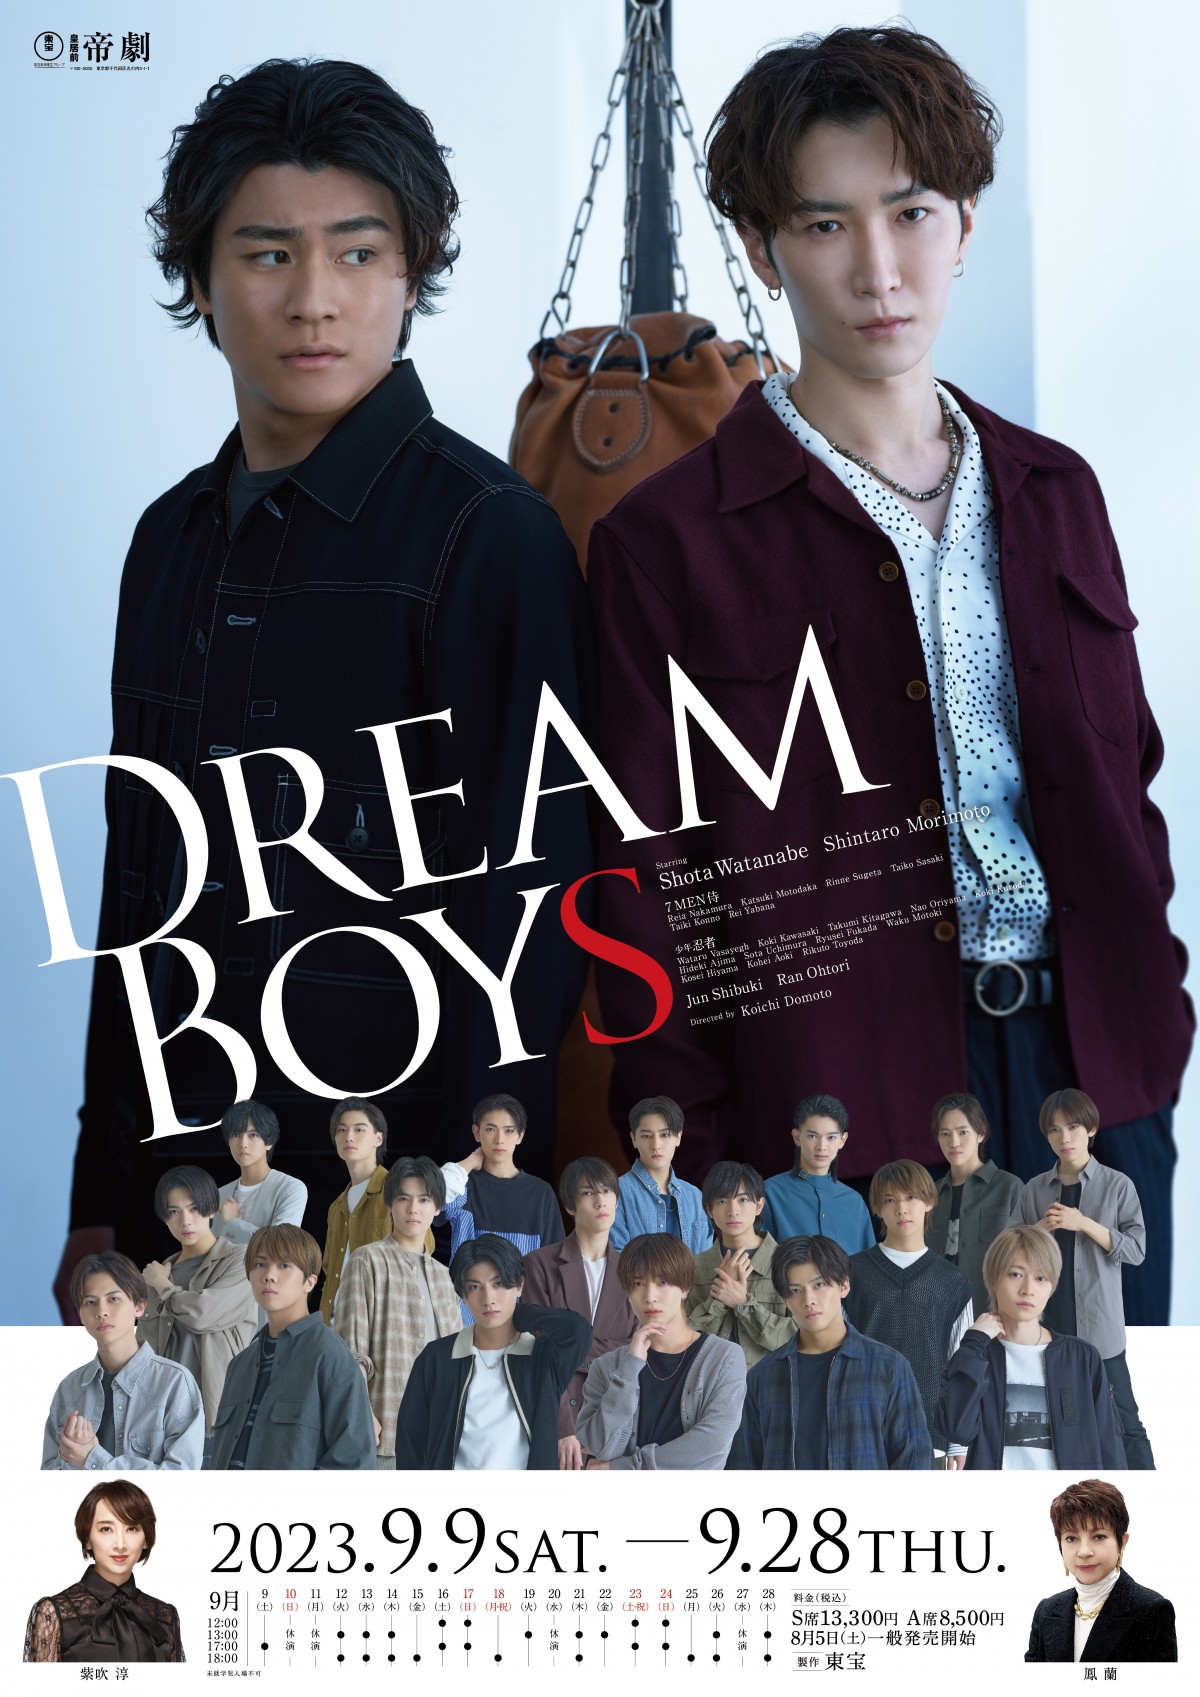 画像・写真 | 渡辺翔太＆森本慎太郎、新『DREAM BOYS』は“伝統”にも重き 2人ならではのステージに意欲 4枚目 | ORICON NEWS